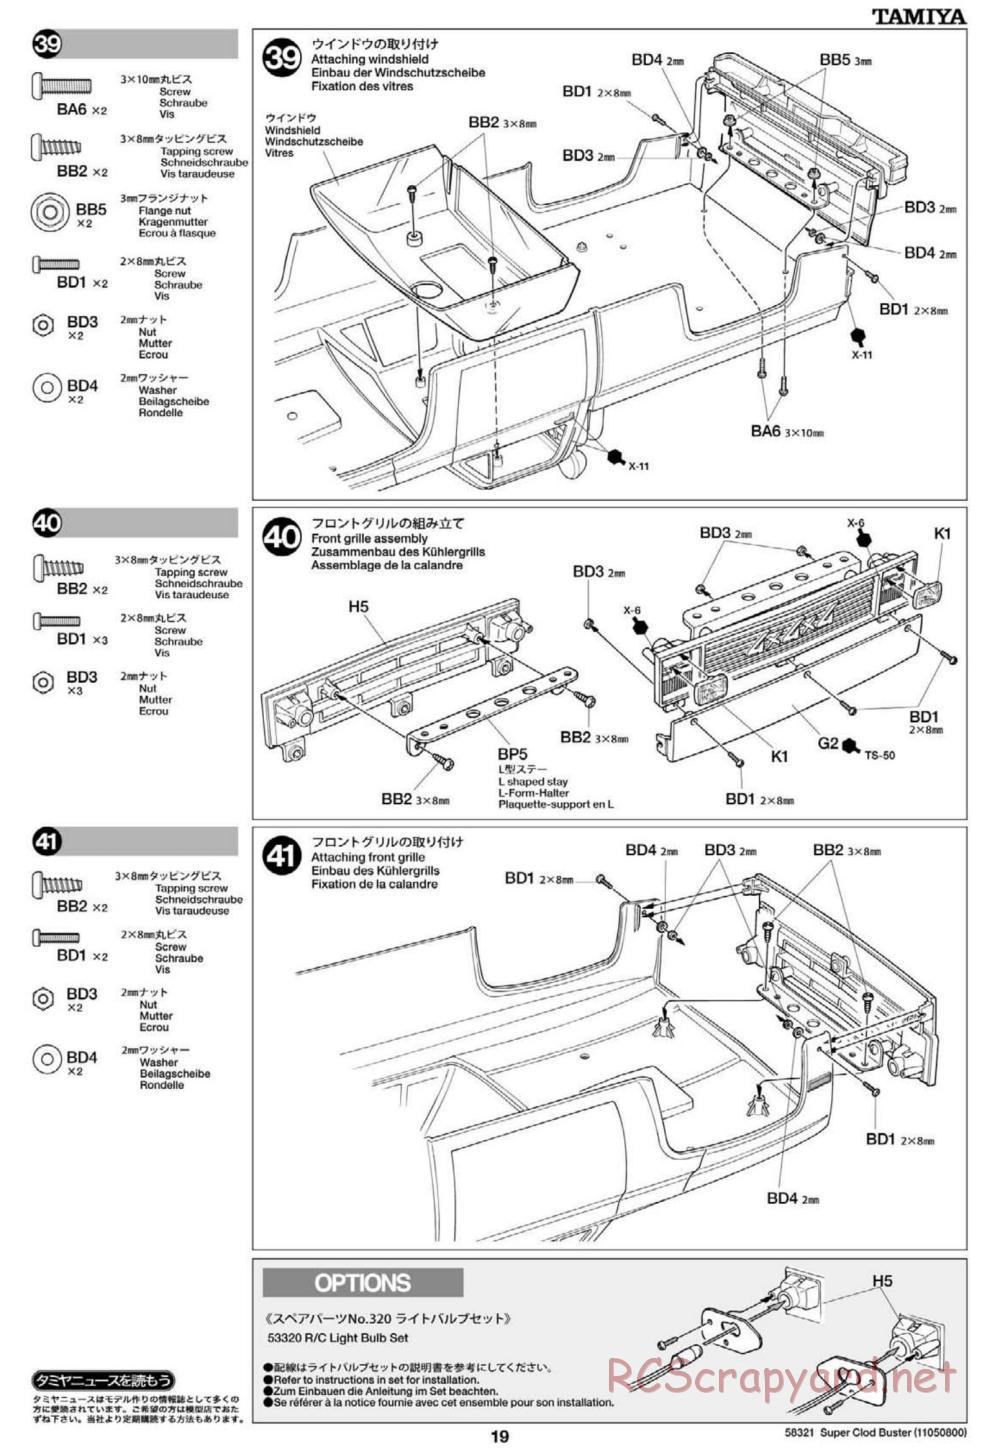 Tamiya - Super Clod Buster Chassis - Manual - Page 19